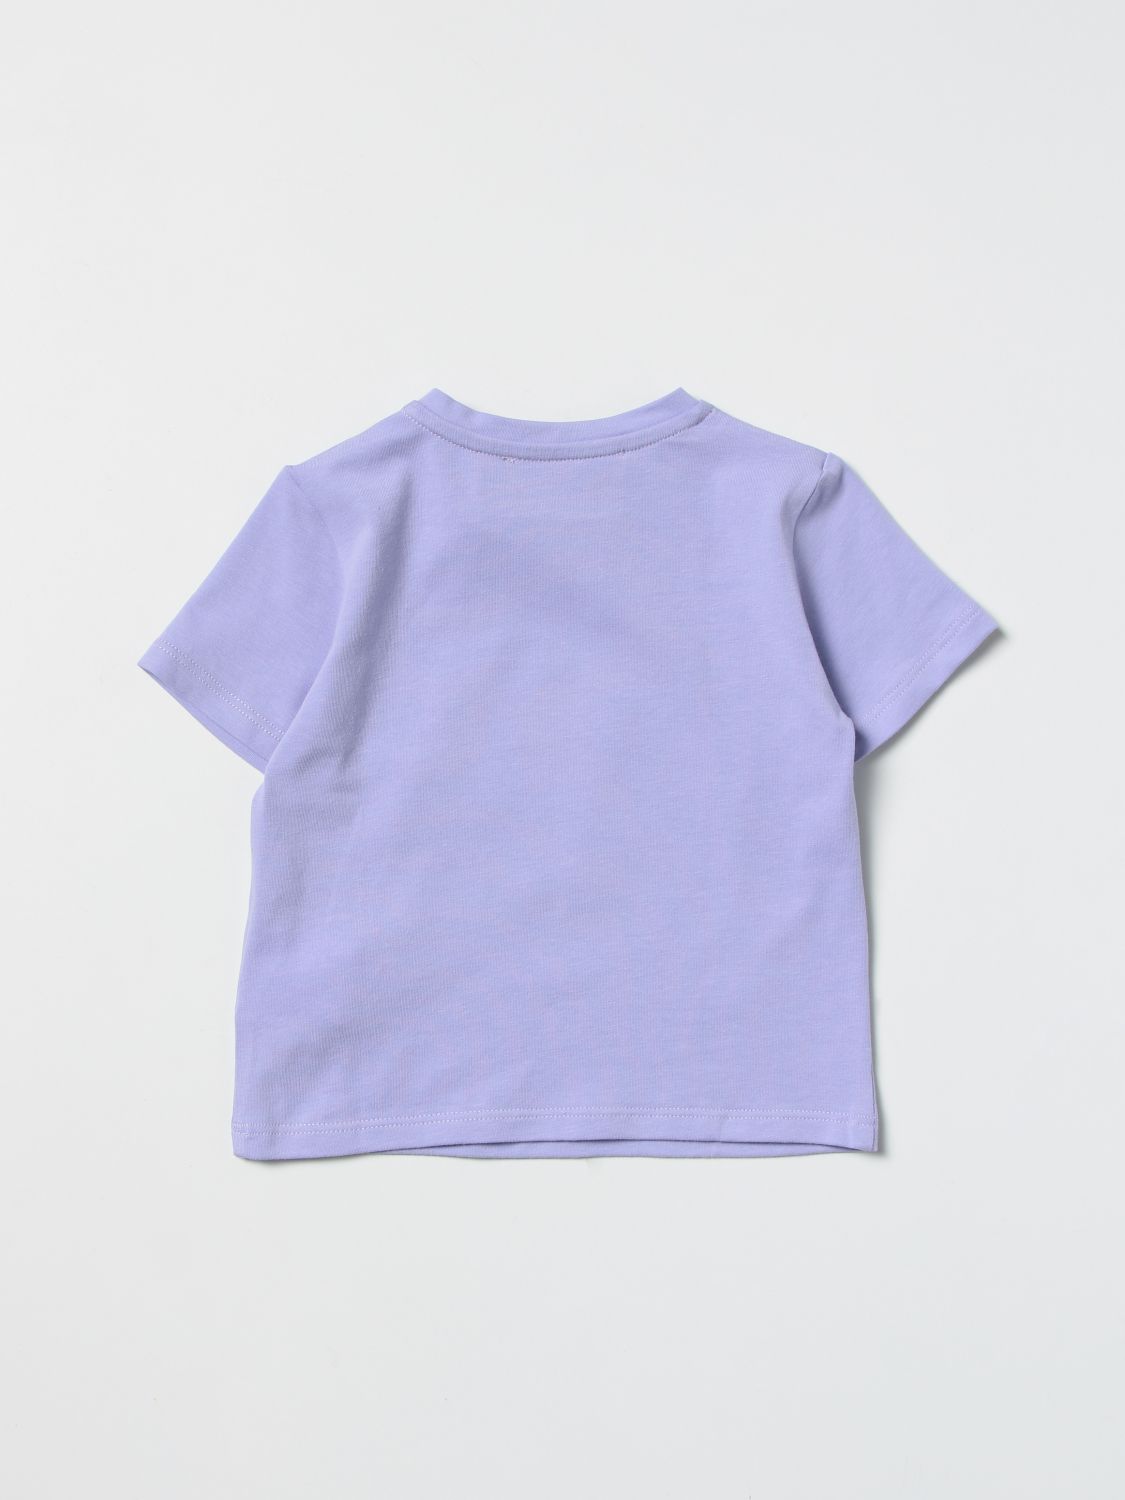 T恤 Young Versace: Young Versacet恤婴儿 淡紫色 2